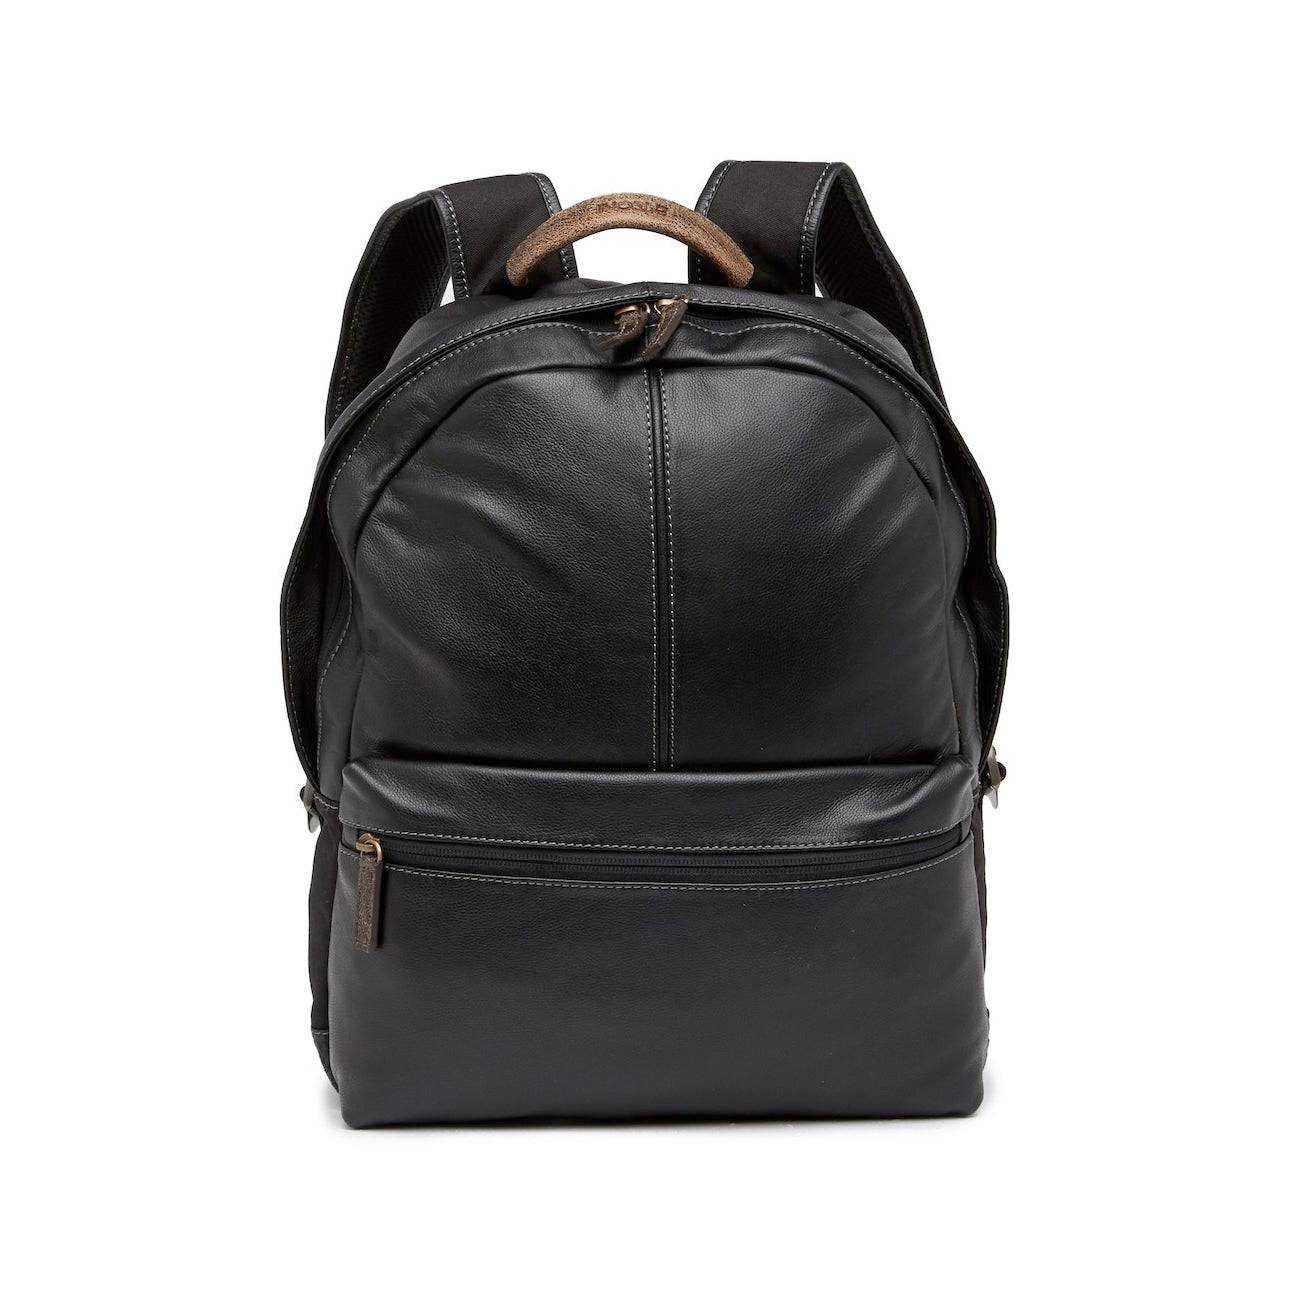 Slim Leather Briefcases for Men: Minimalist & Thin Design - Von Baer